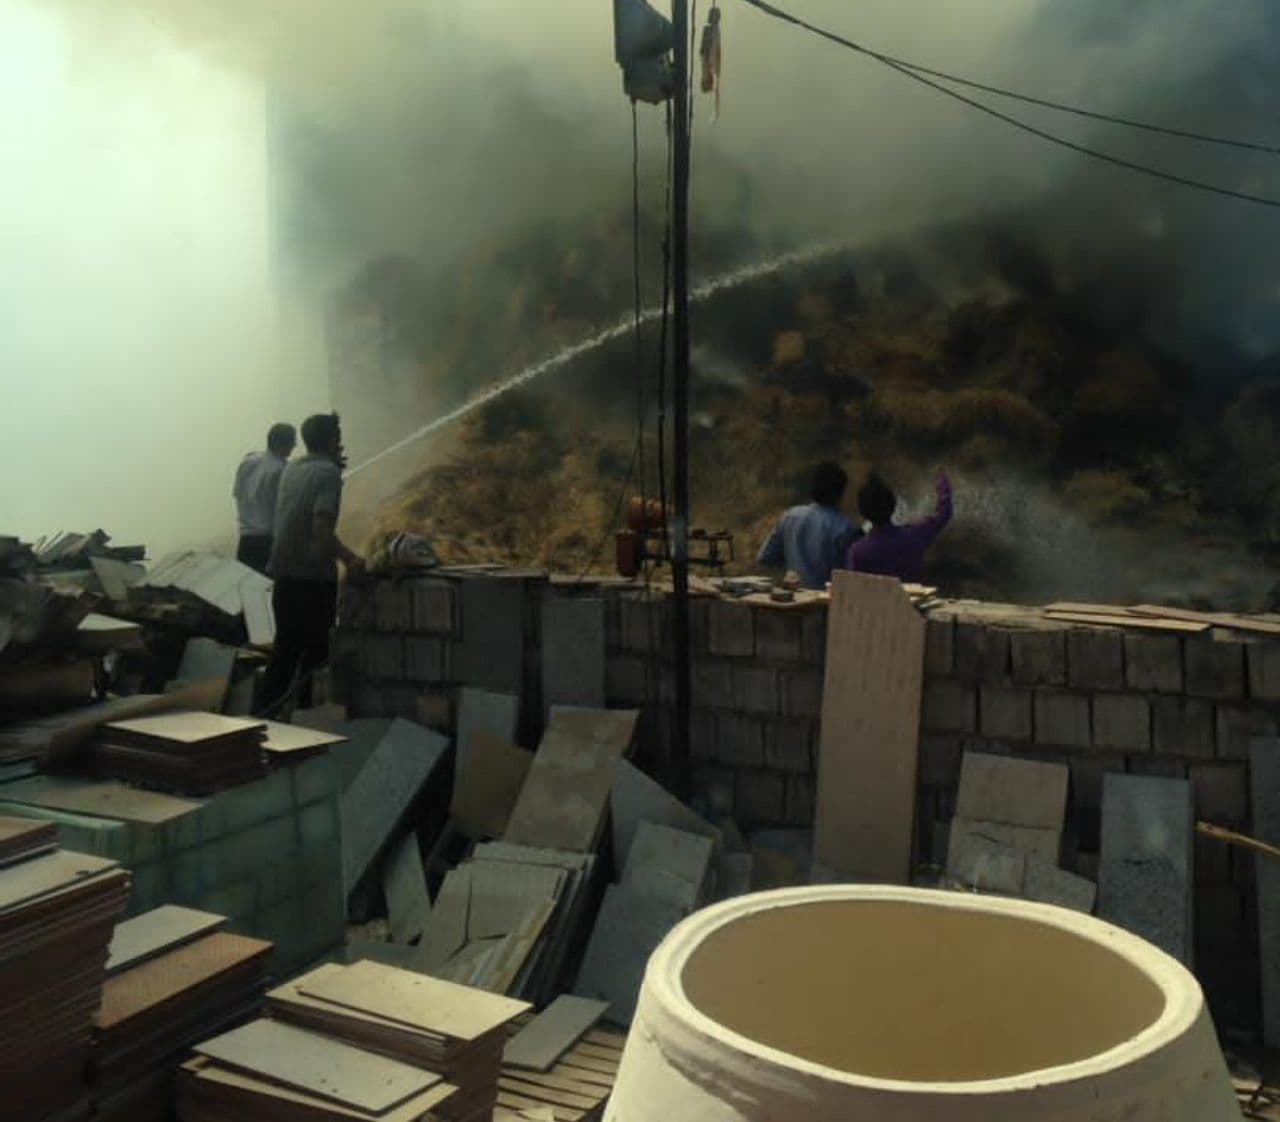 آتش سوزی امروز در مطهرآباد زرند ناشی از کاه بوده!